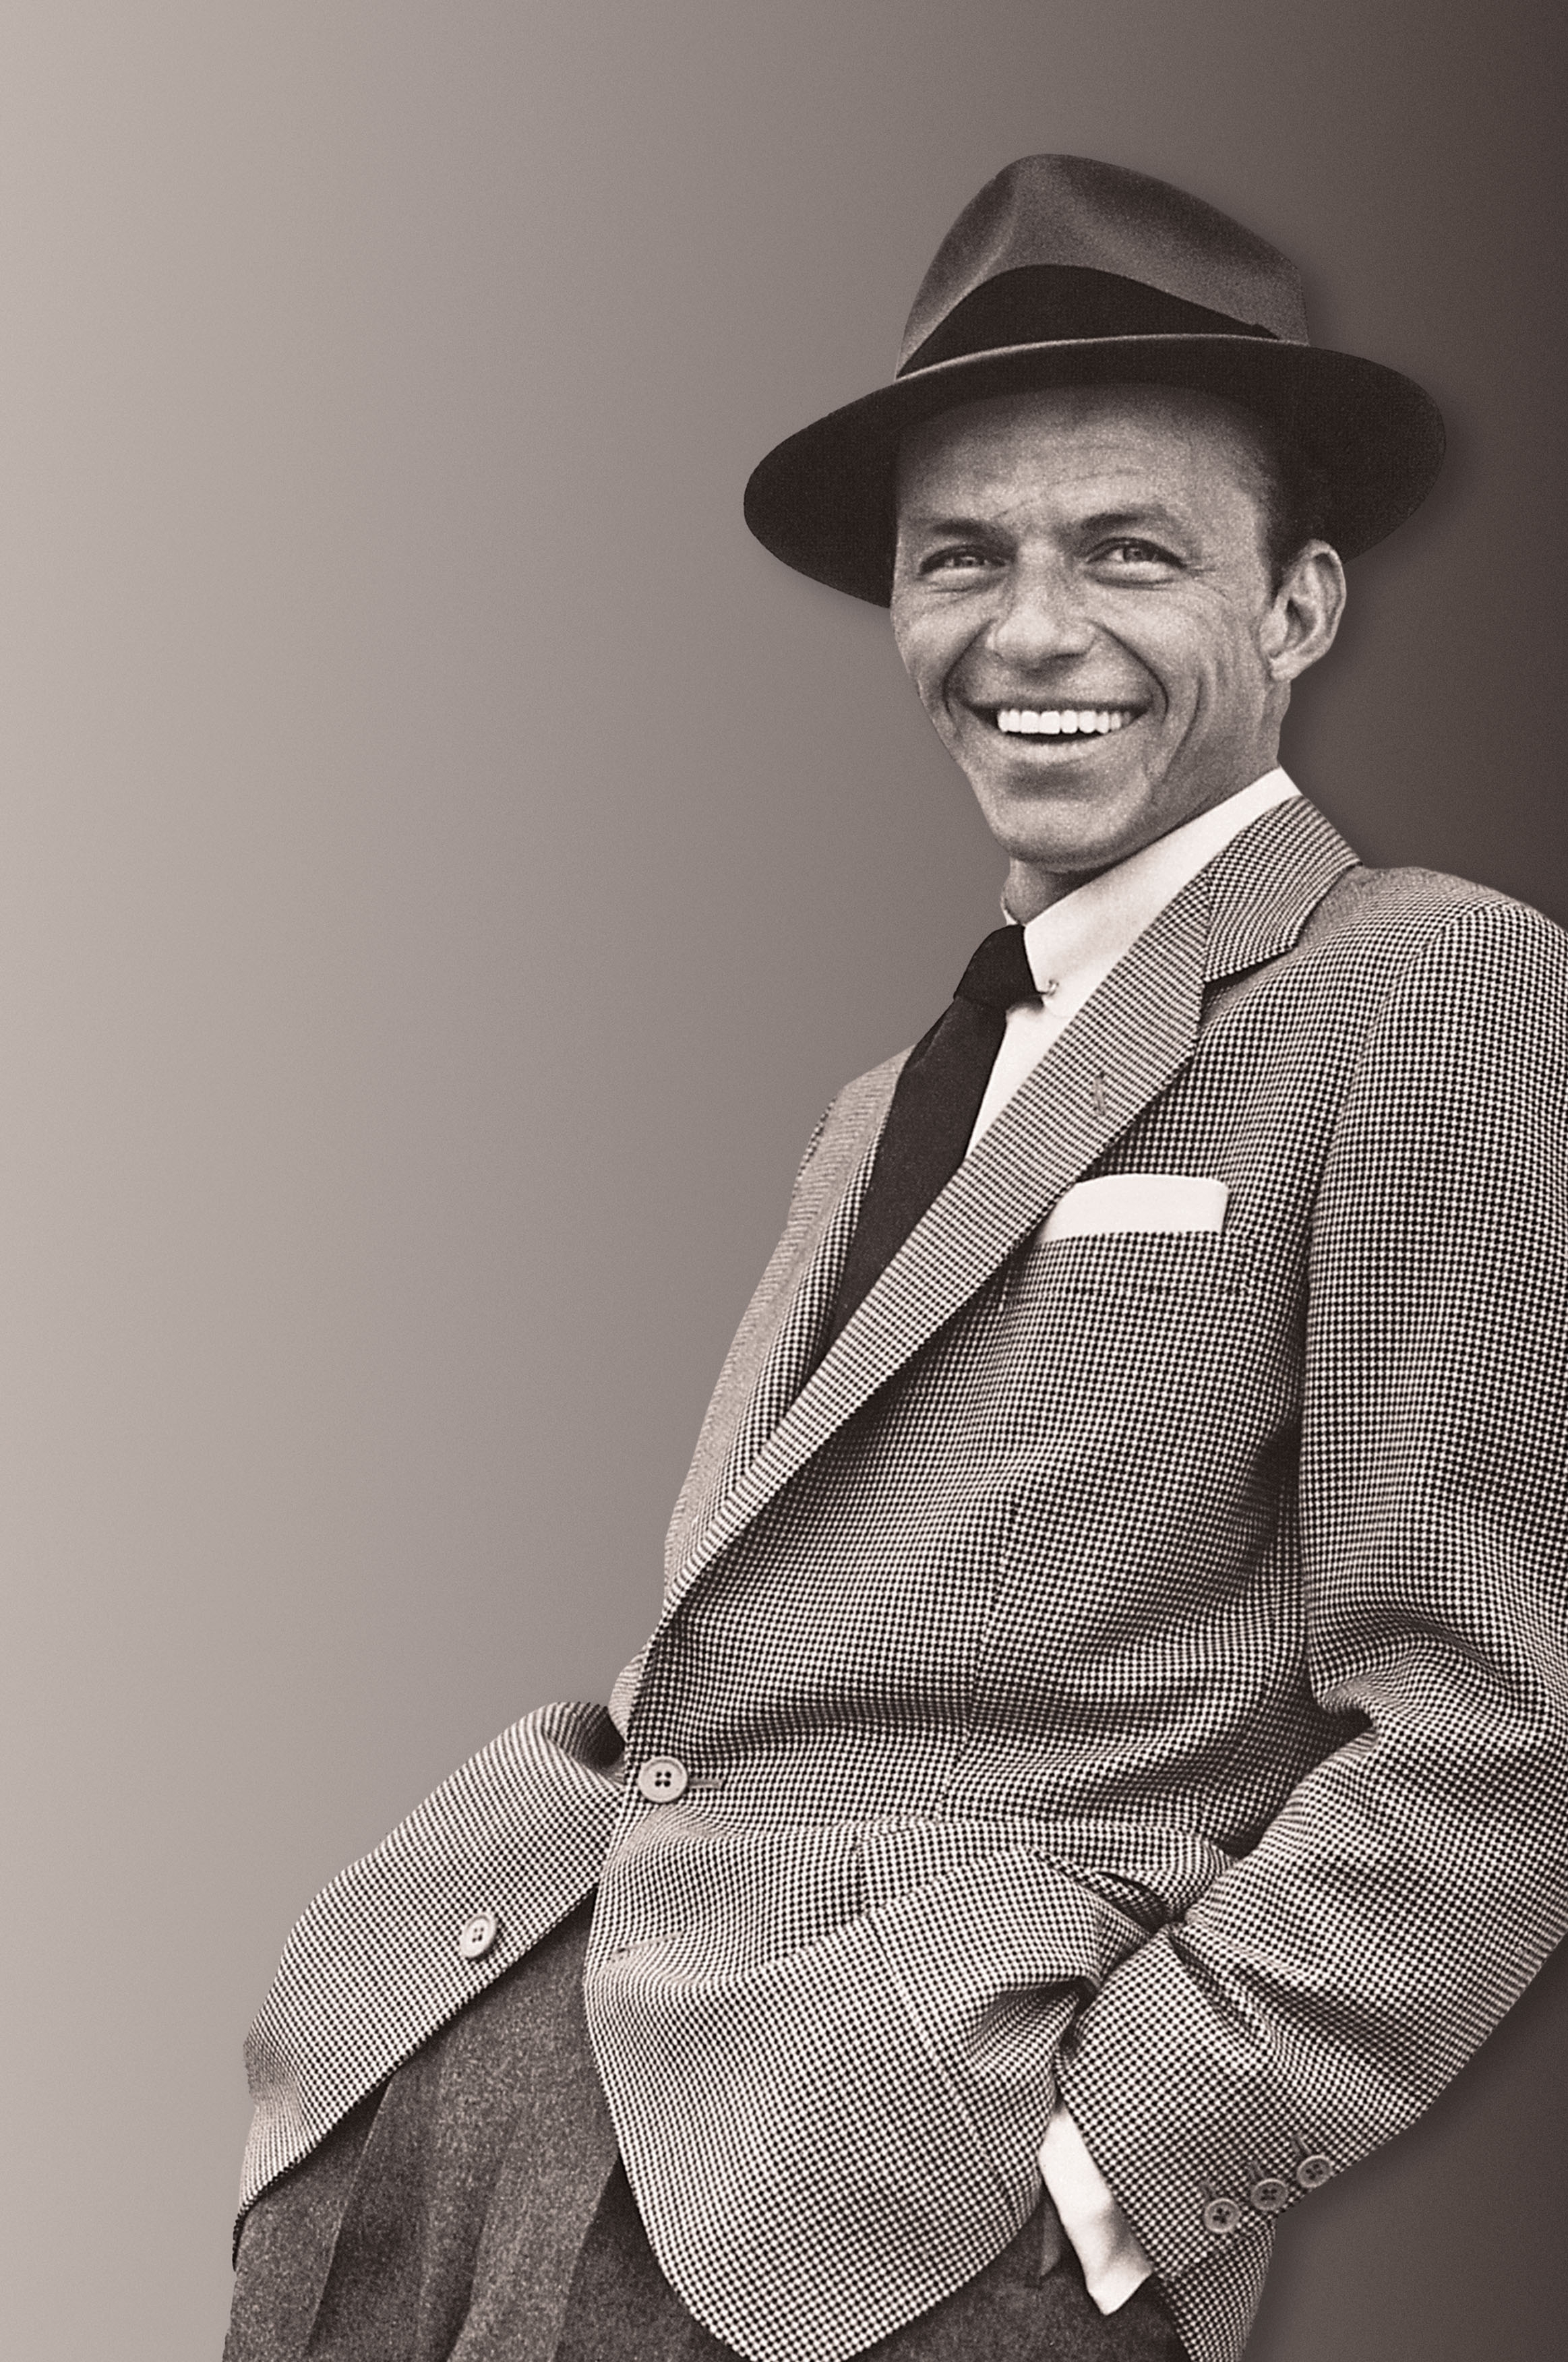 Frank Sinatra - desktop wallpaper